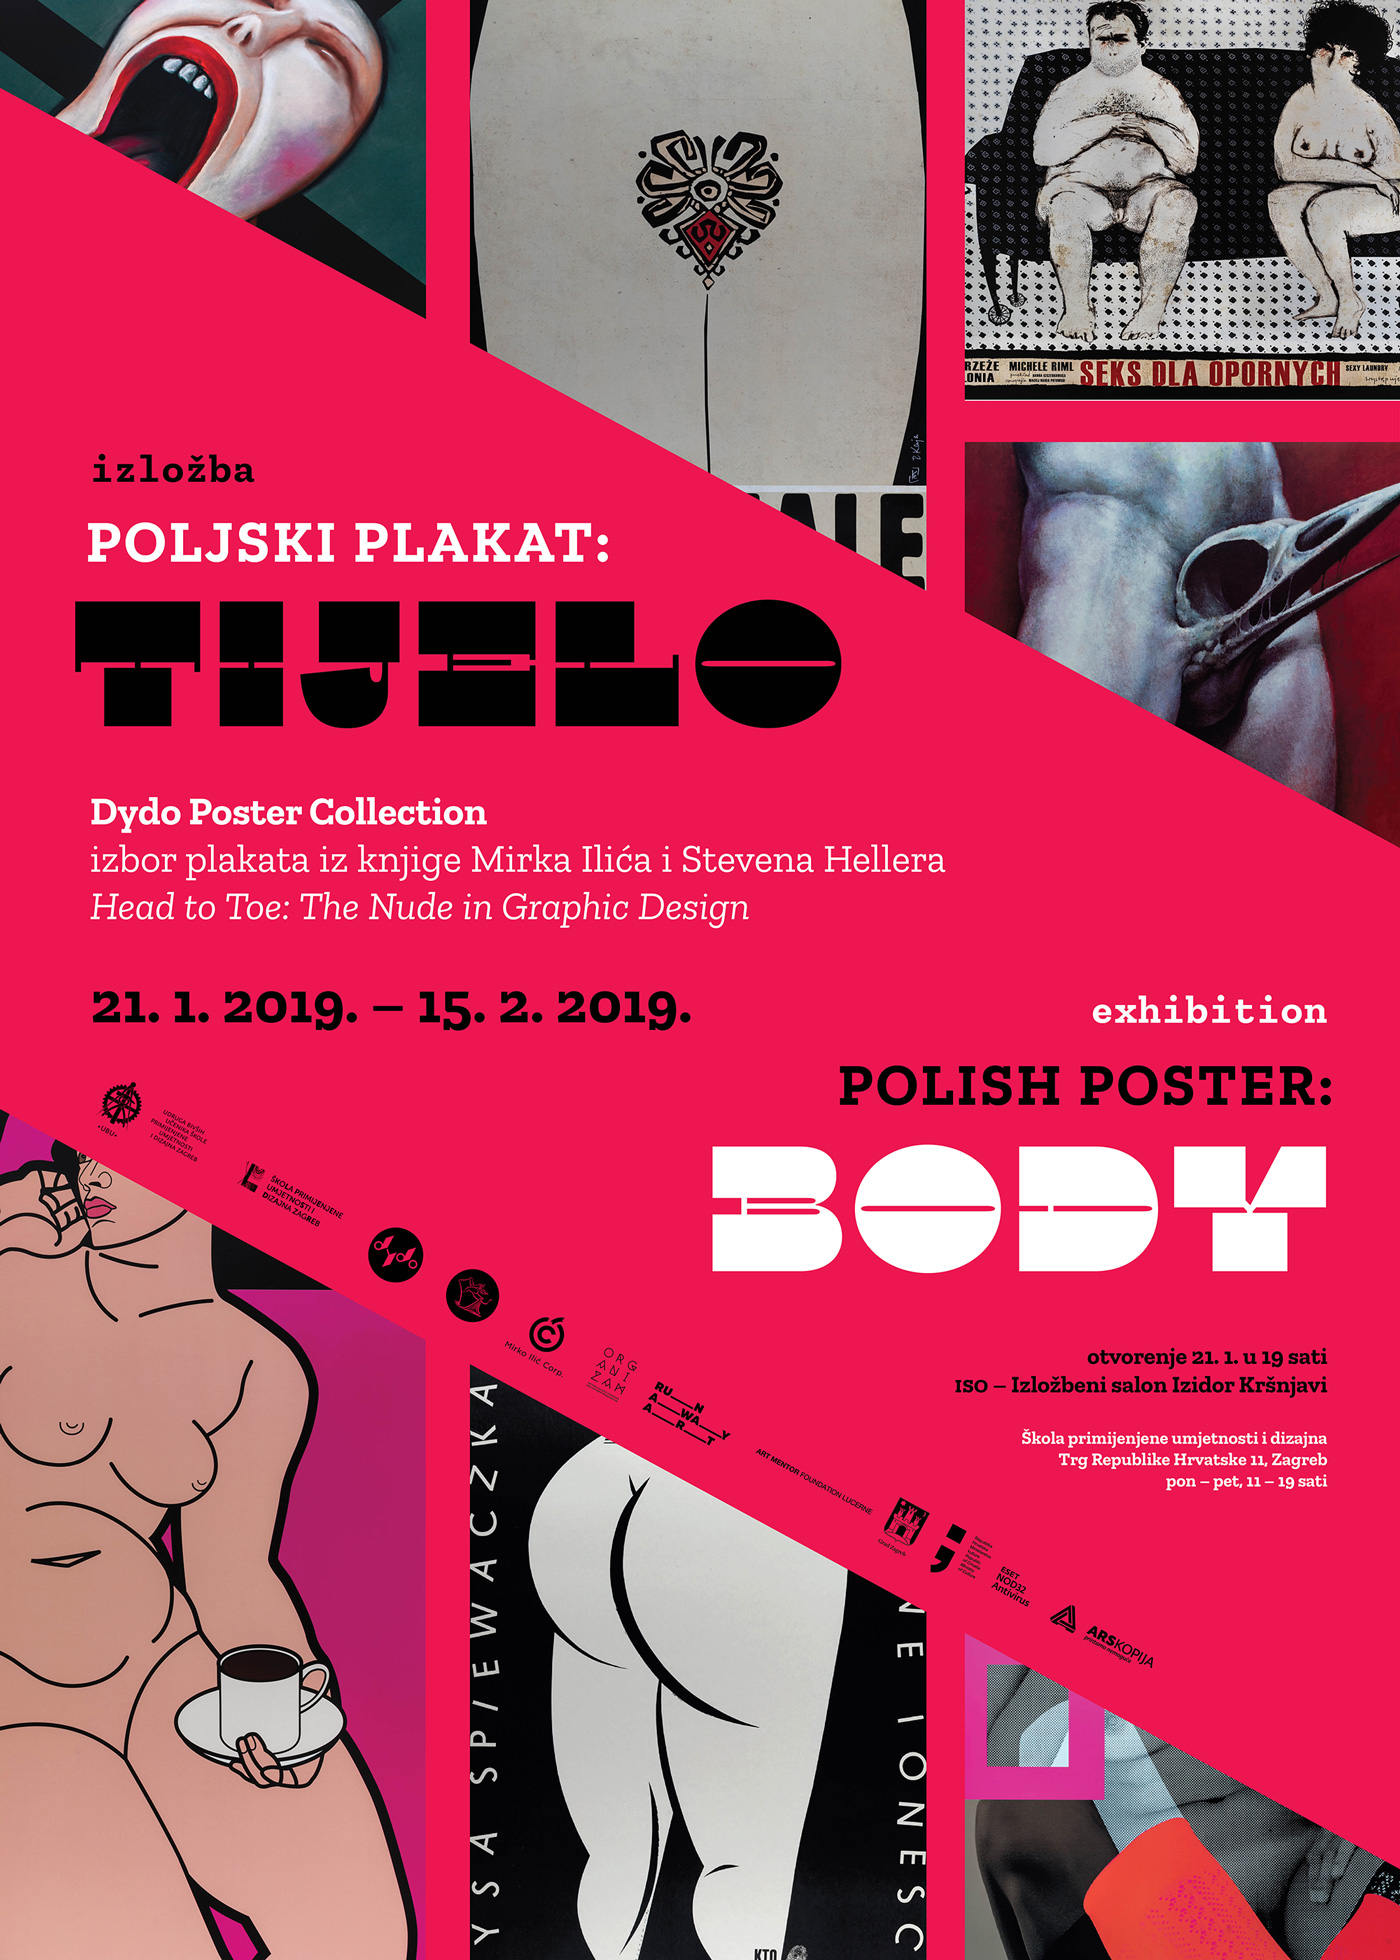 Polish Poster in Croatia: Body